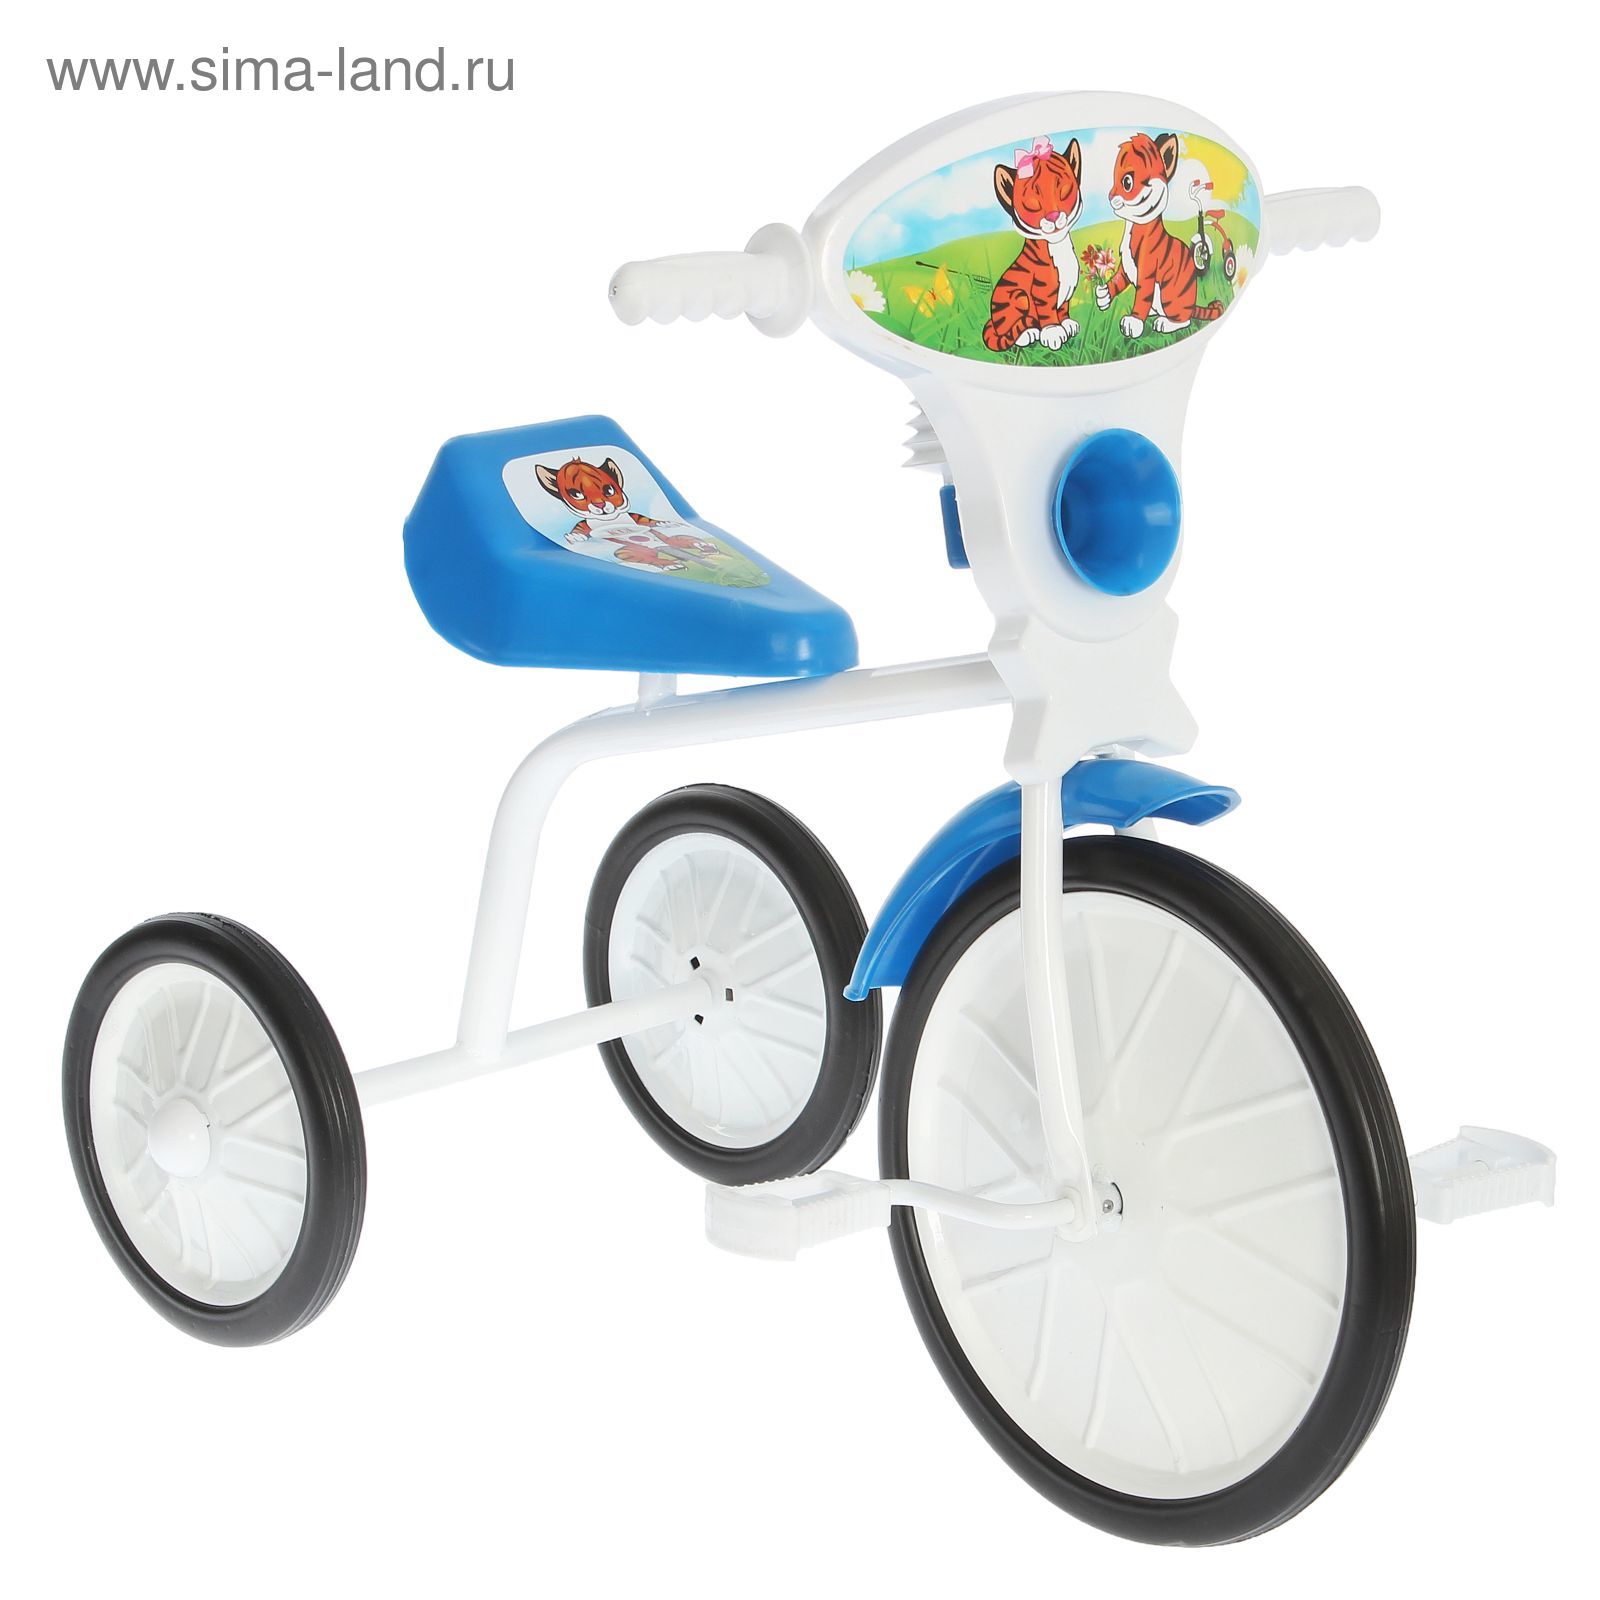 Велосипед трехколесный  "Малыш"  01, цвет синий, фасовка: 3шт.